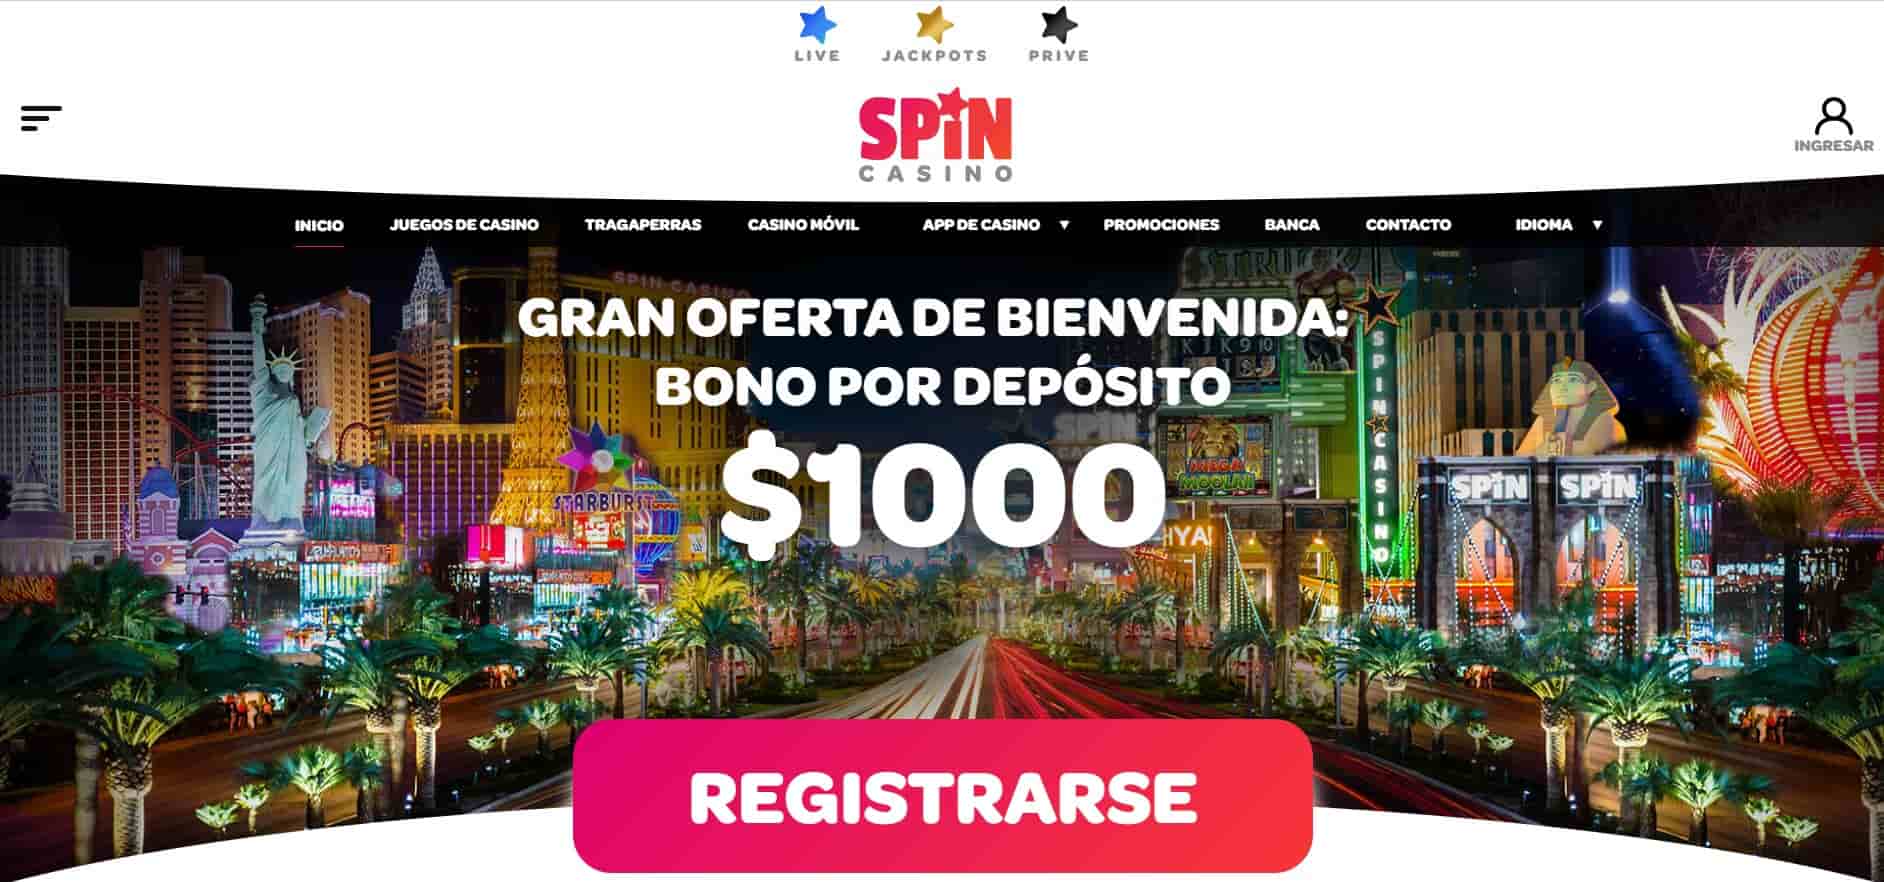 Bono de bienvenida de Spin Casino